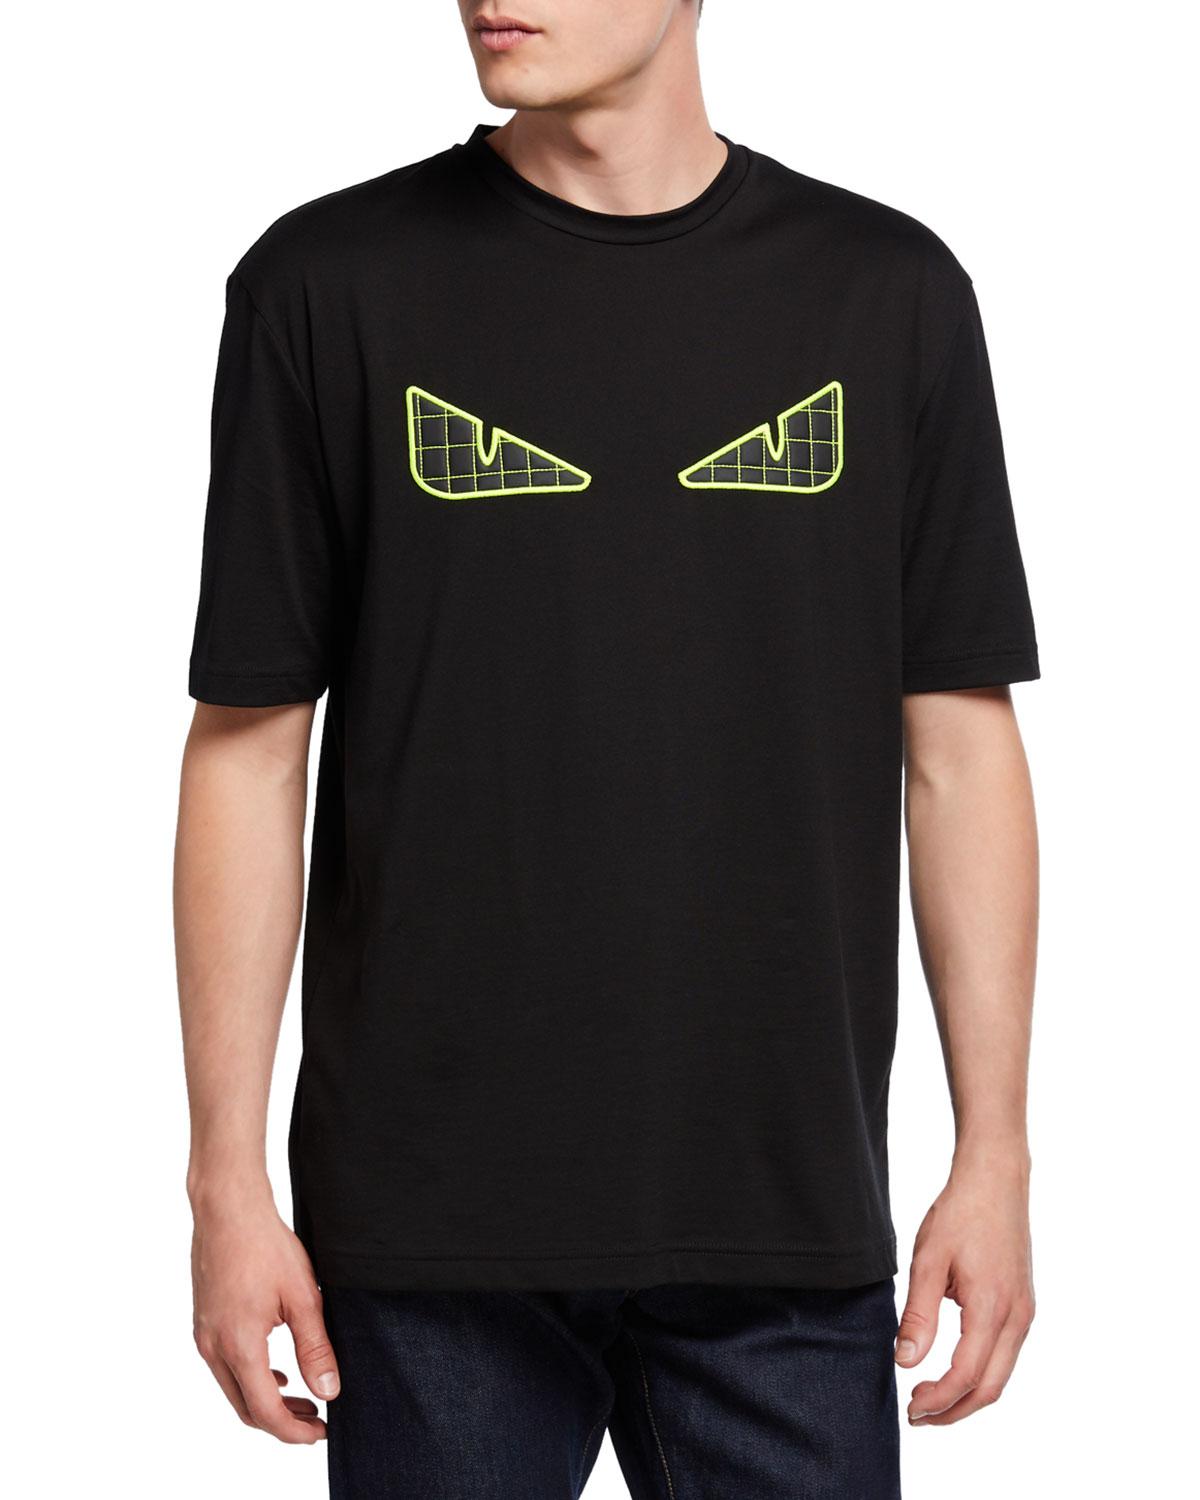 Fendi Men's Fluorescent Eyes Graphic T-shirt in Black for Men - Lyst